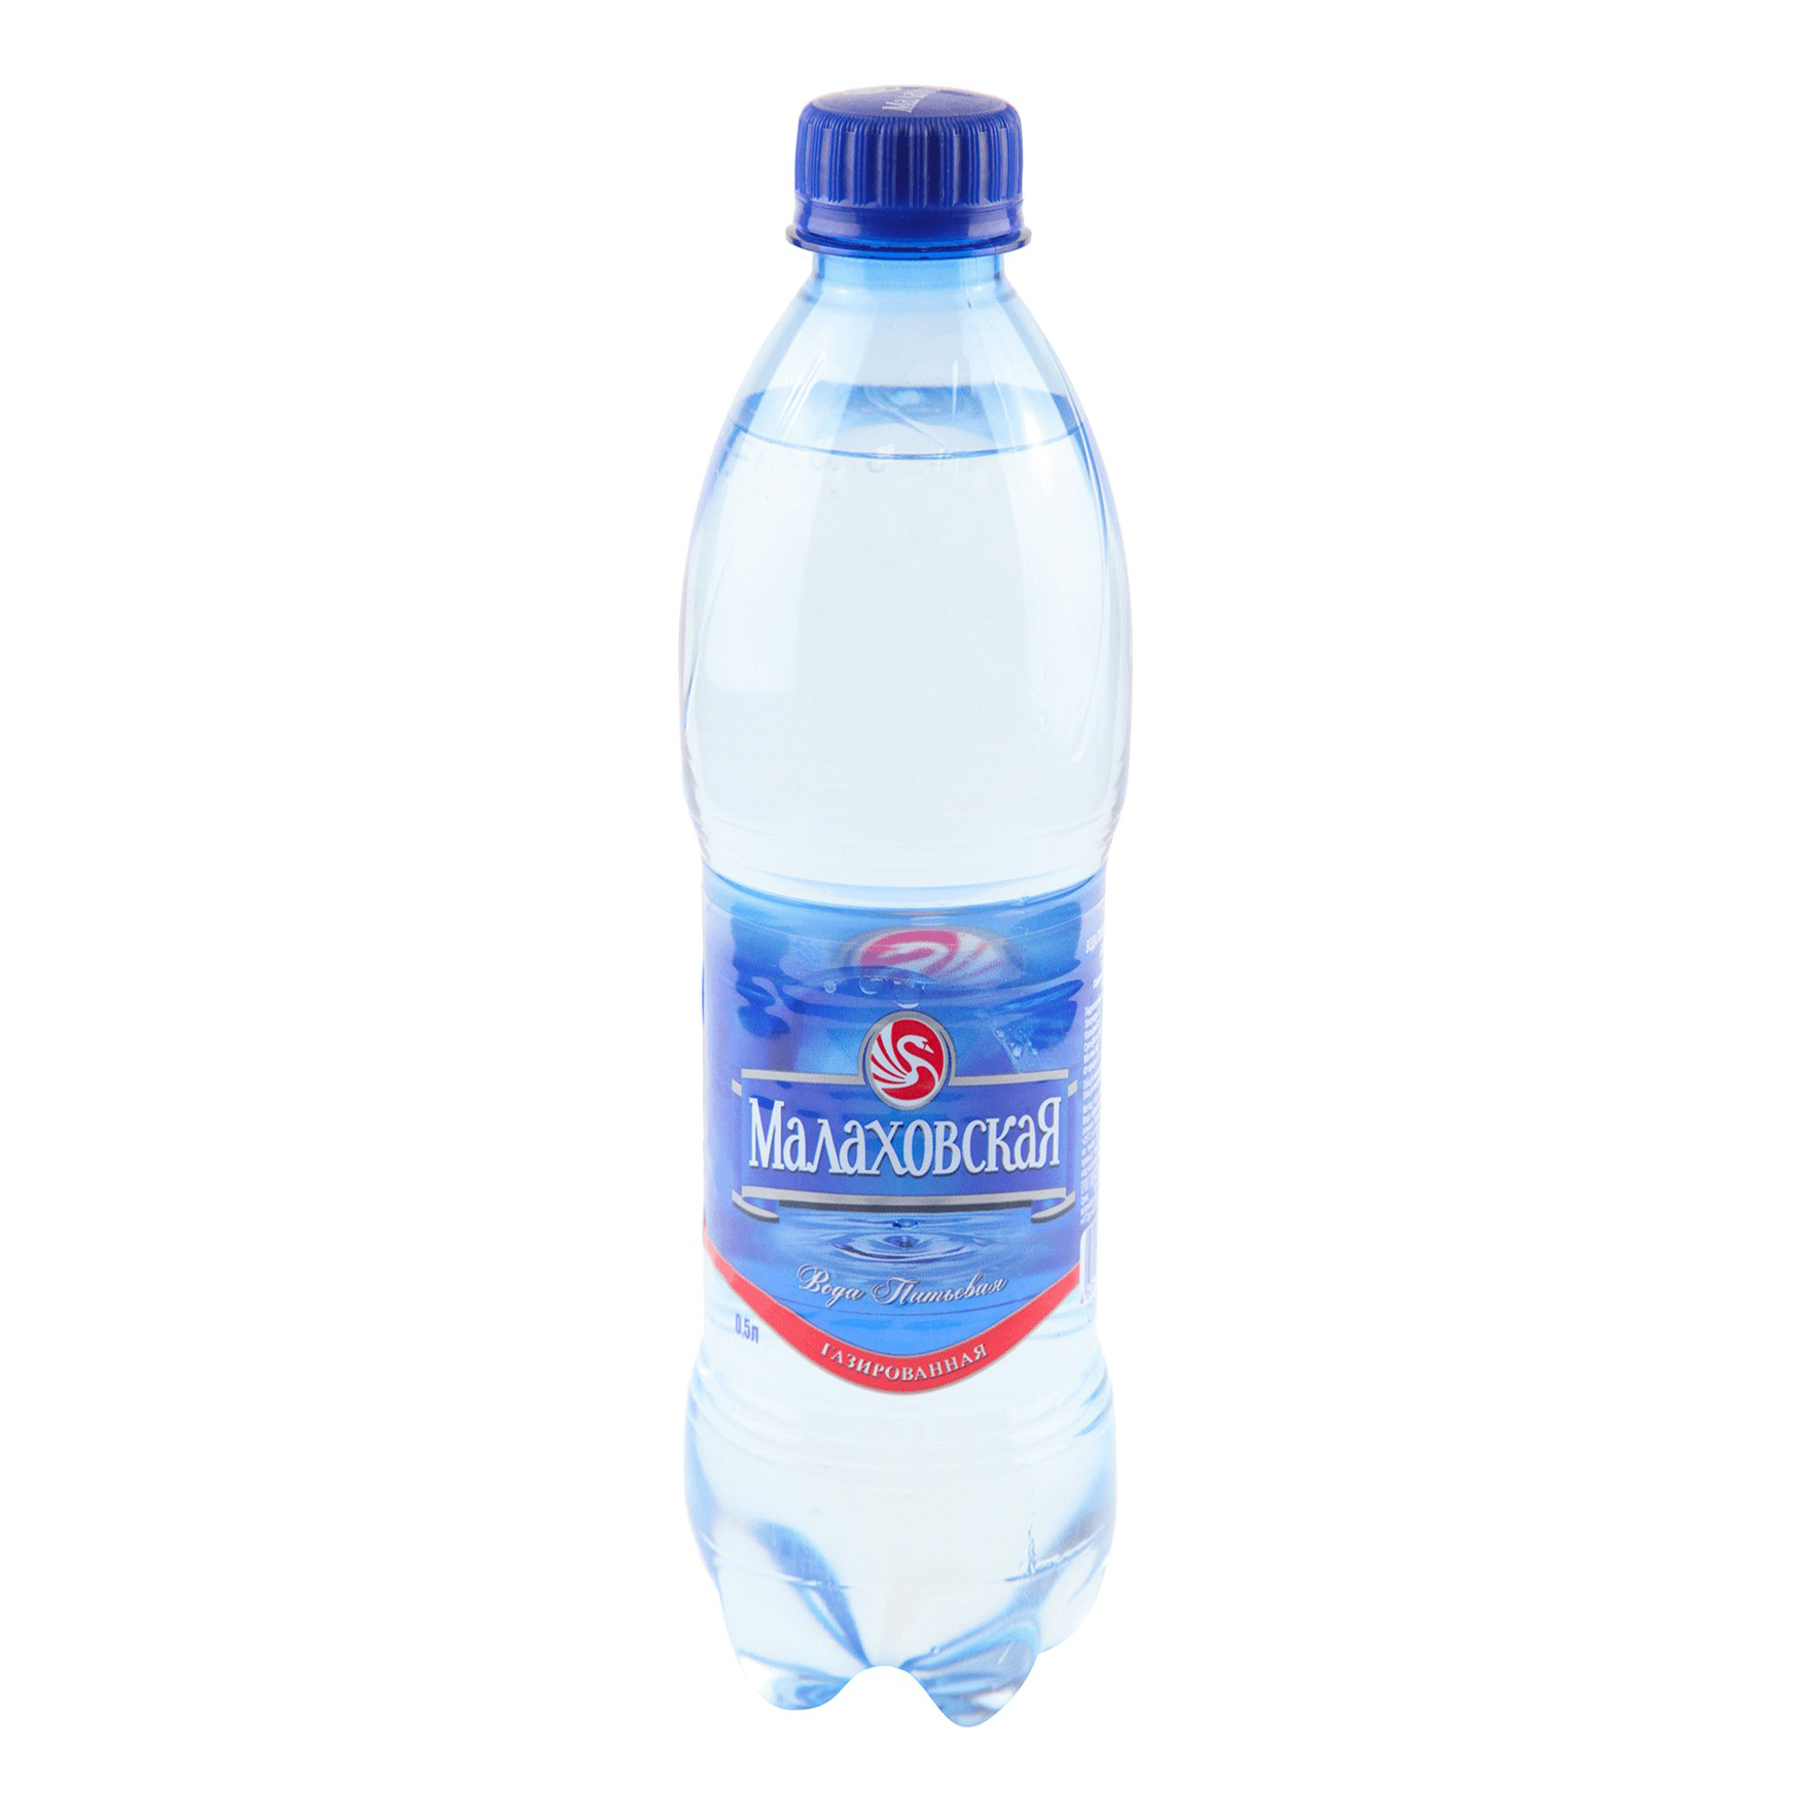 Вода минеральная Малаховская газированная 0,5 л